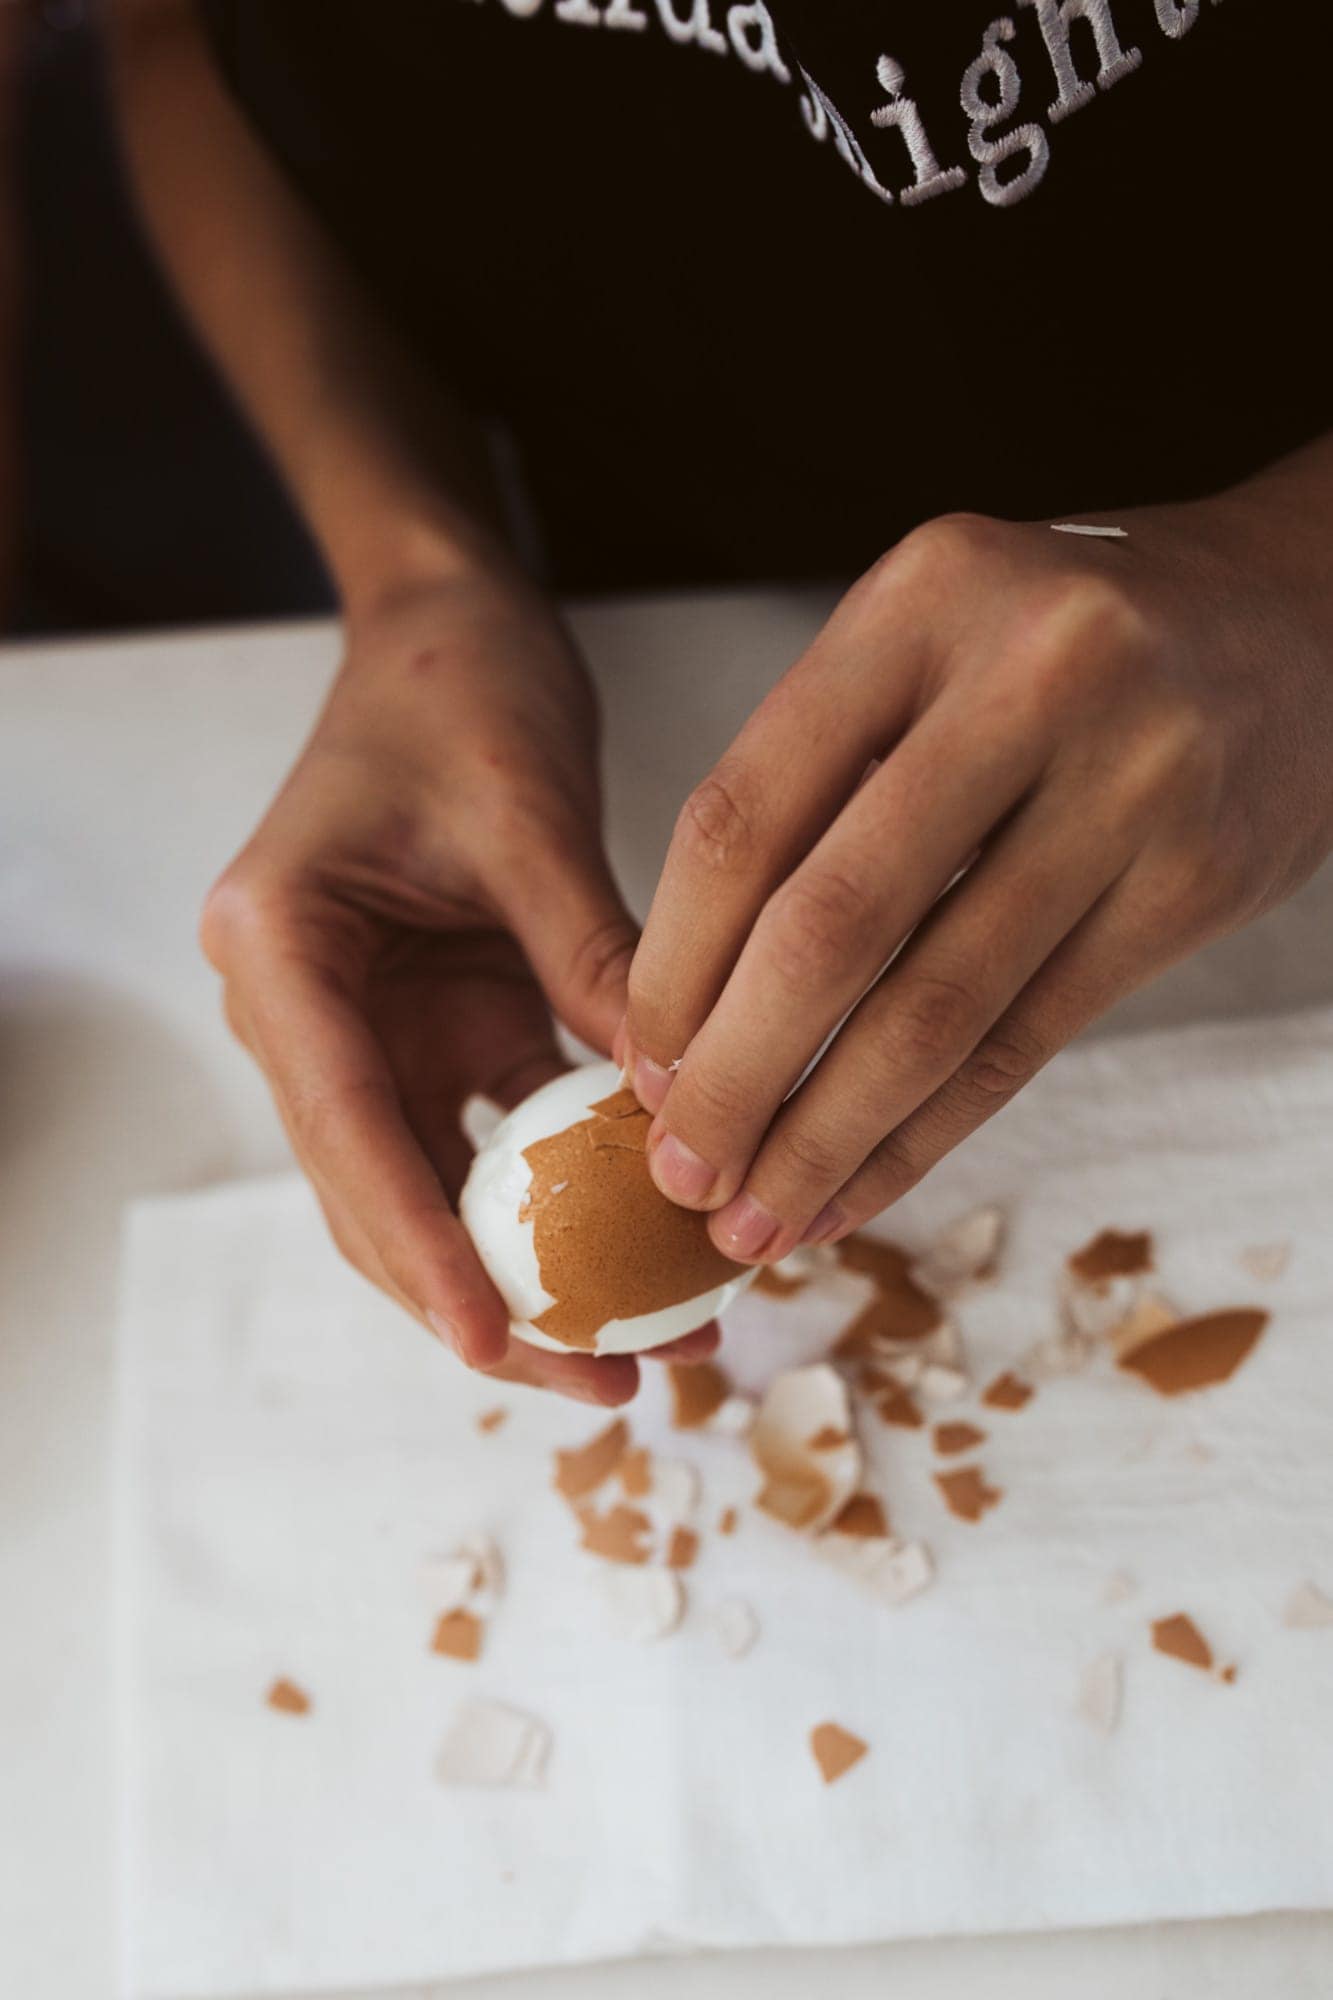 peeling an egg